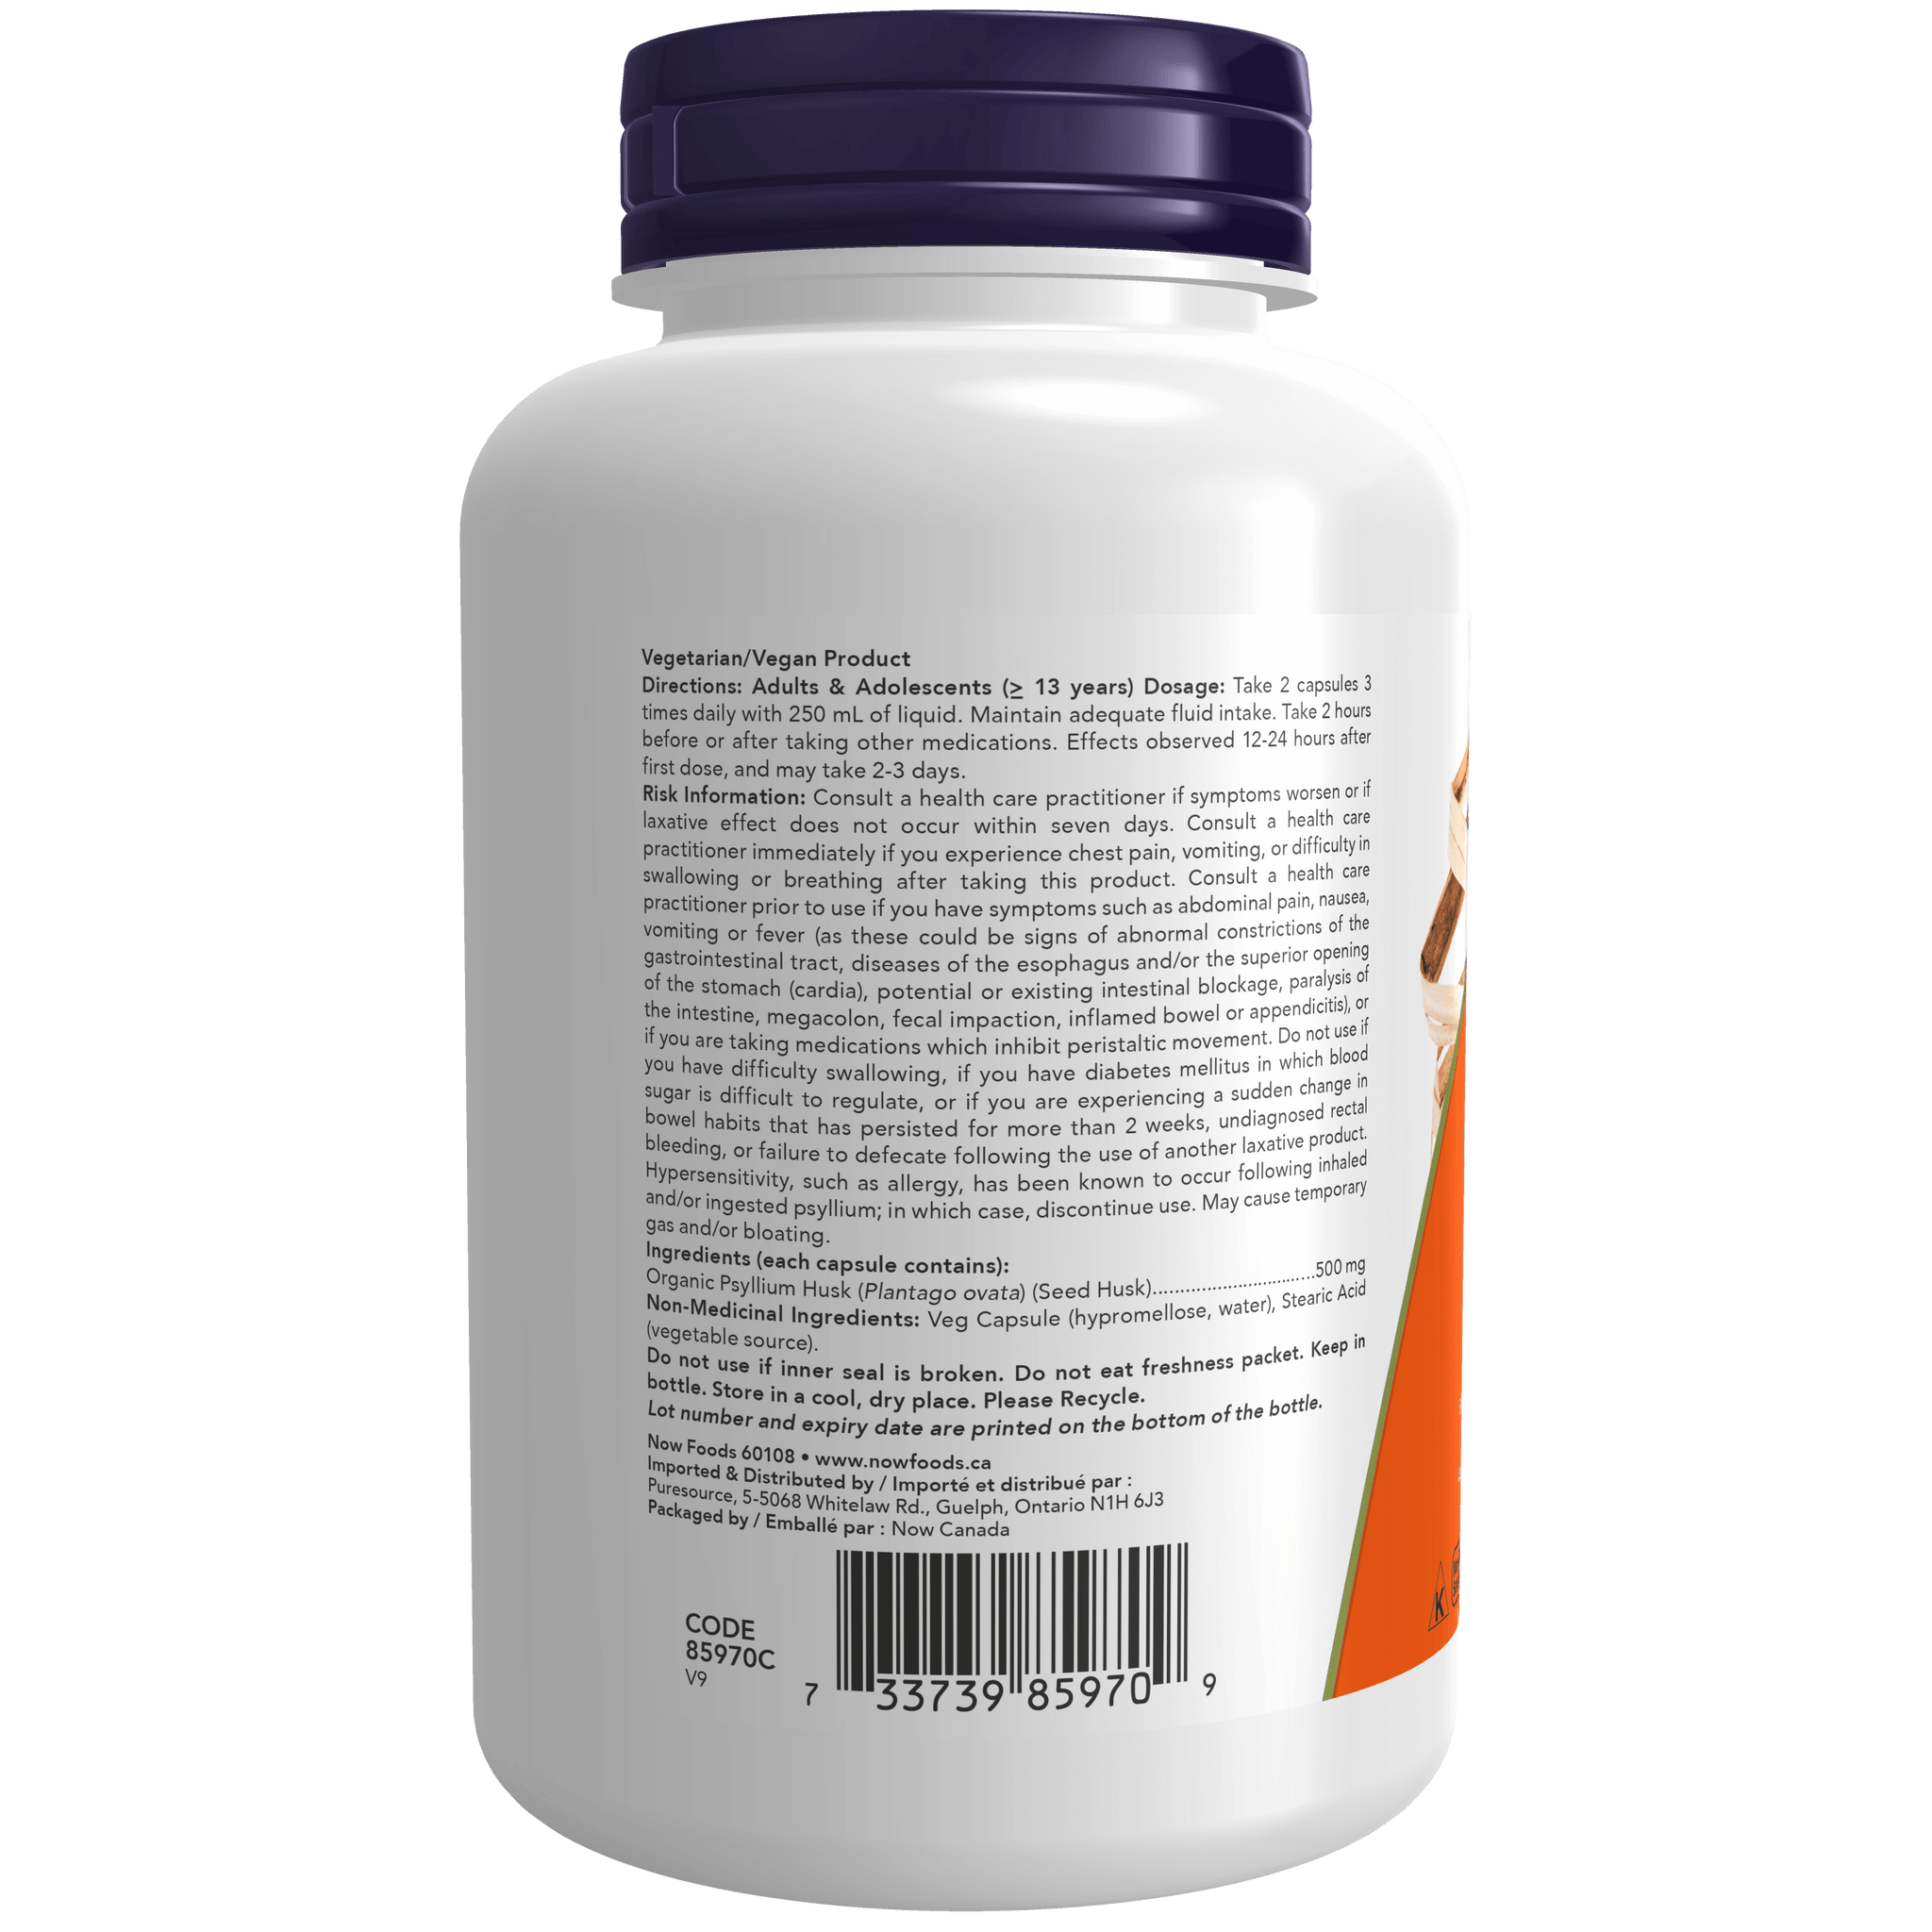 NOW - Psyllium Husk Capsules (500mg), 200 Veggie Capsules, Product Description, SNS Health